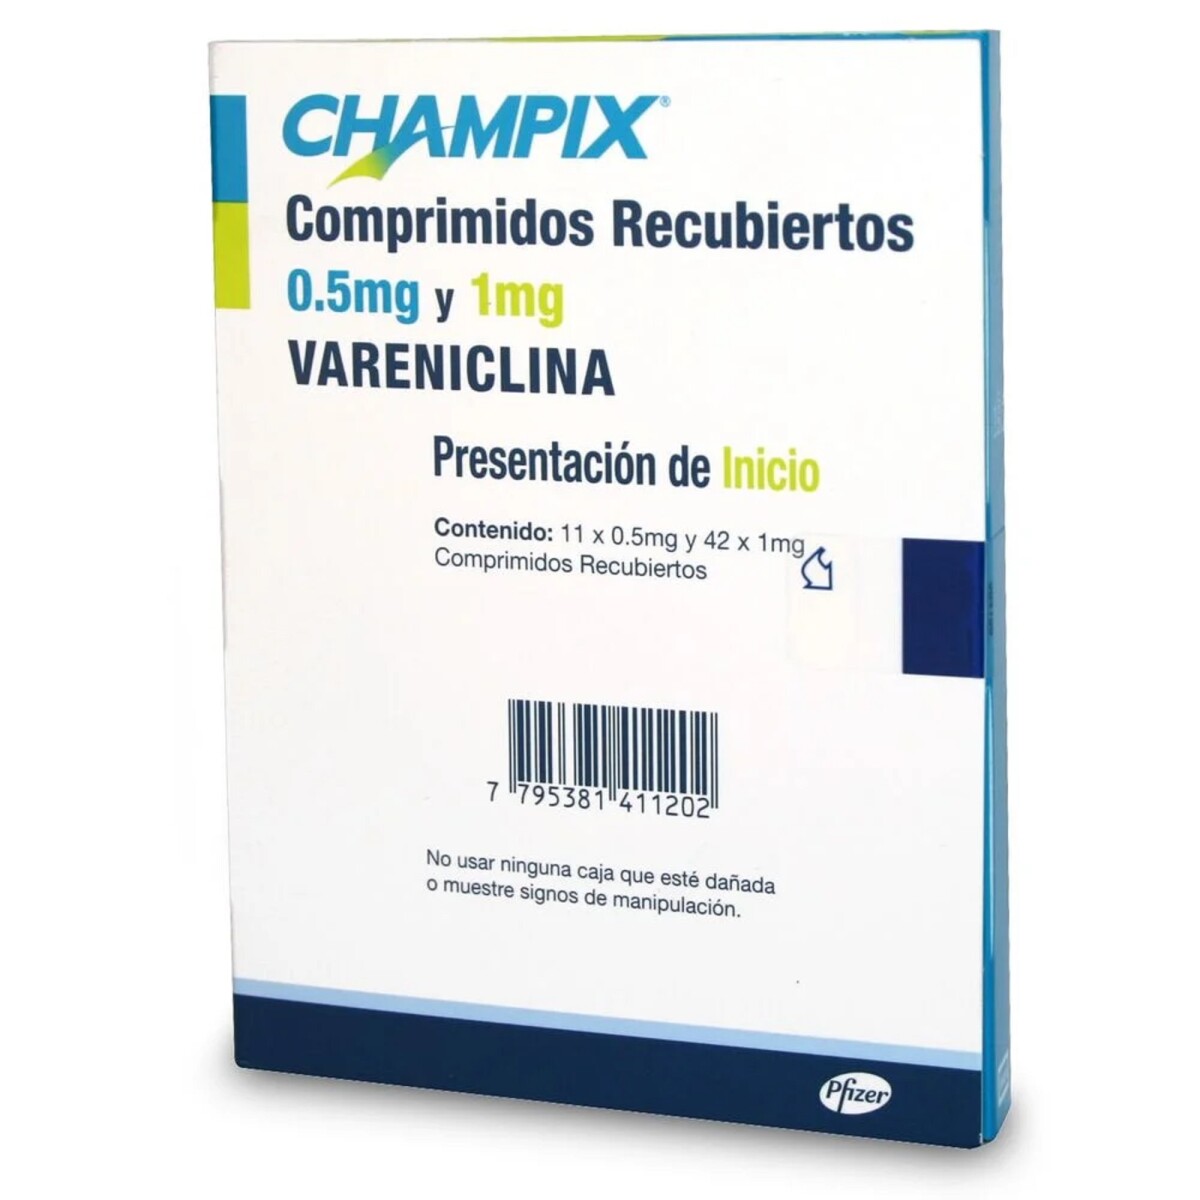 Champix Varenicina 0.5 Mg. Y 1mg. Presentación De Inicio. 